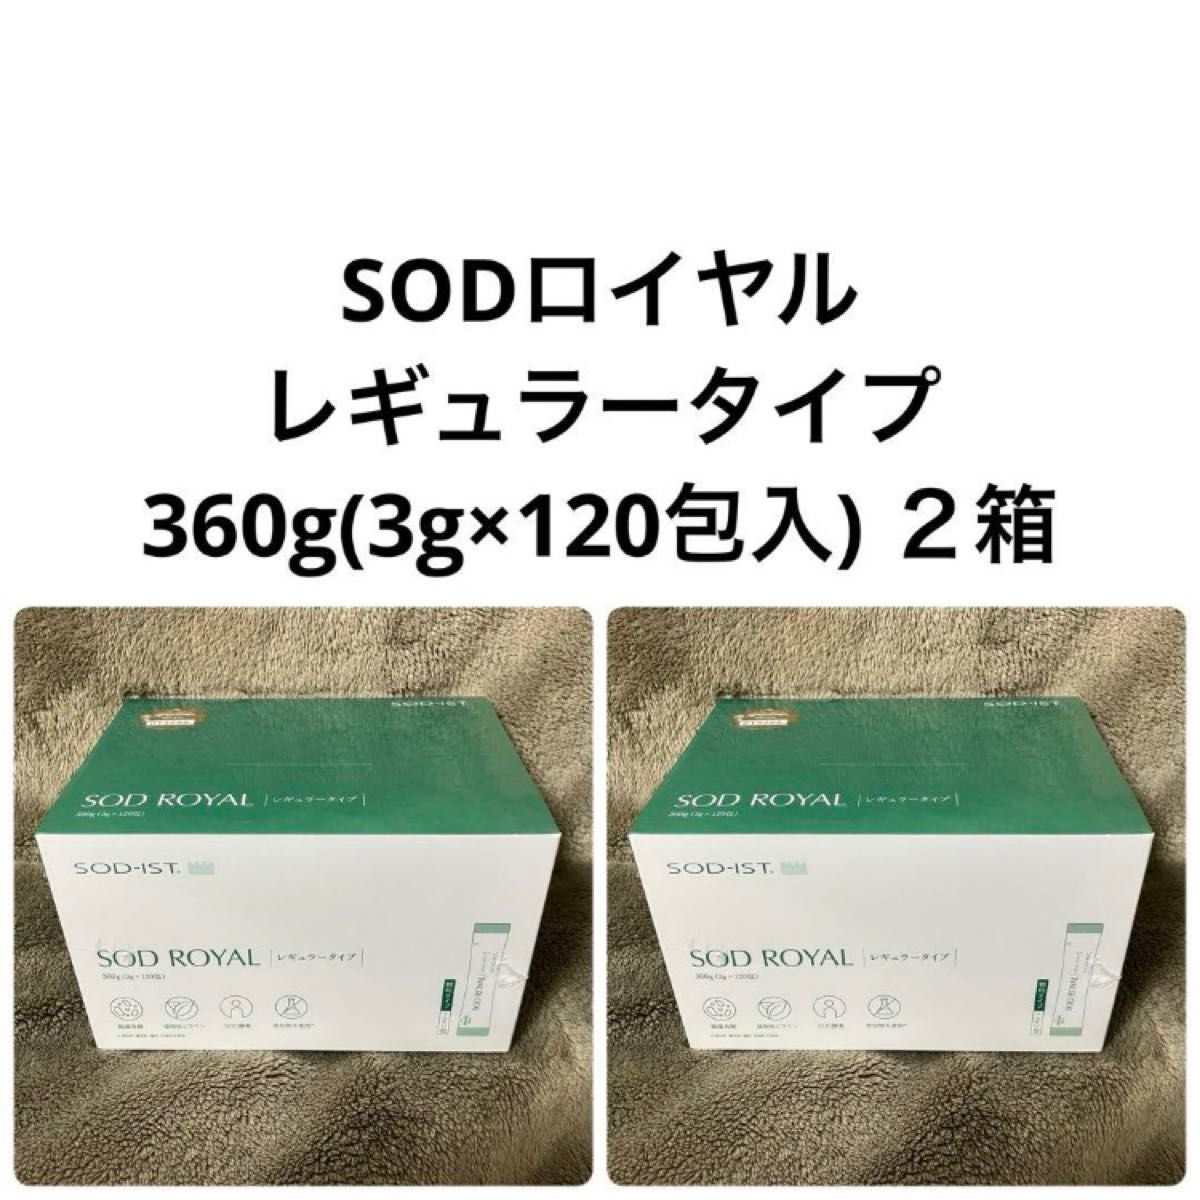 丹羽SOD様食品 SODロイヤル レギュラー ２箱